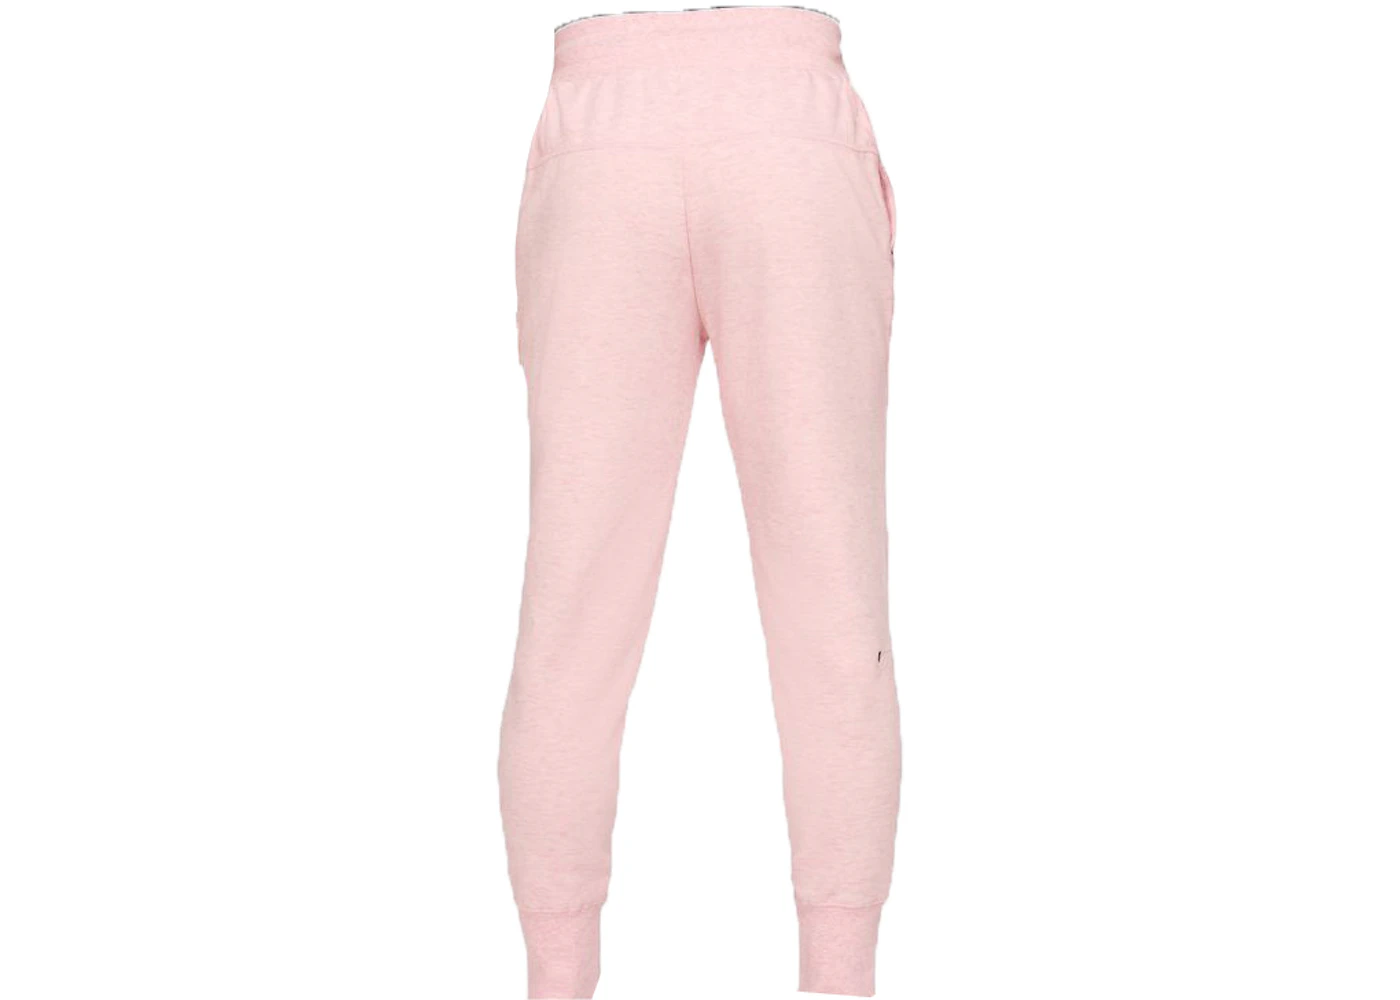 Nike Sportswear Kids' Tech Fleece Joggers Pink Foam/Heather/Black Kids' -  SS22 - US